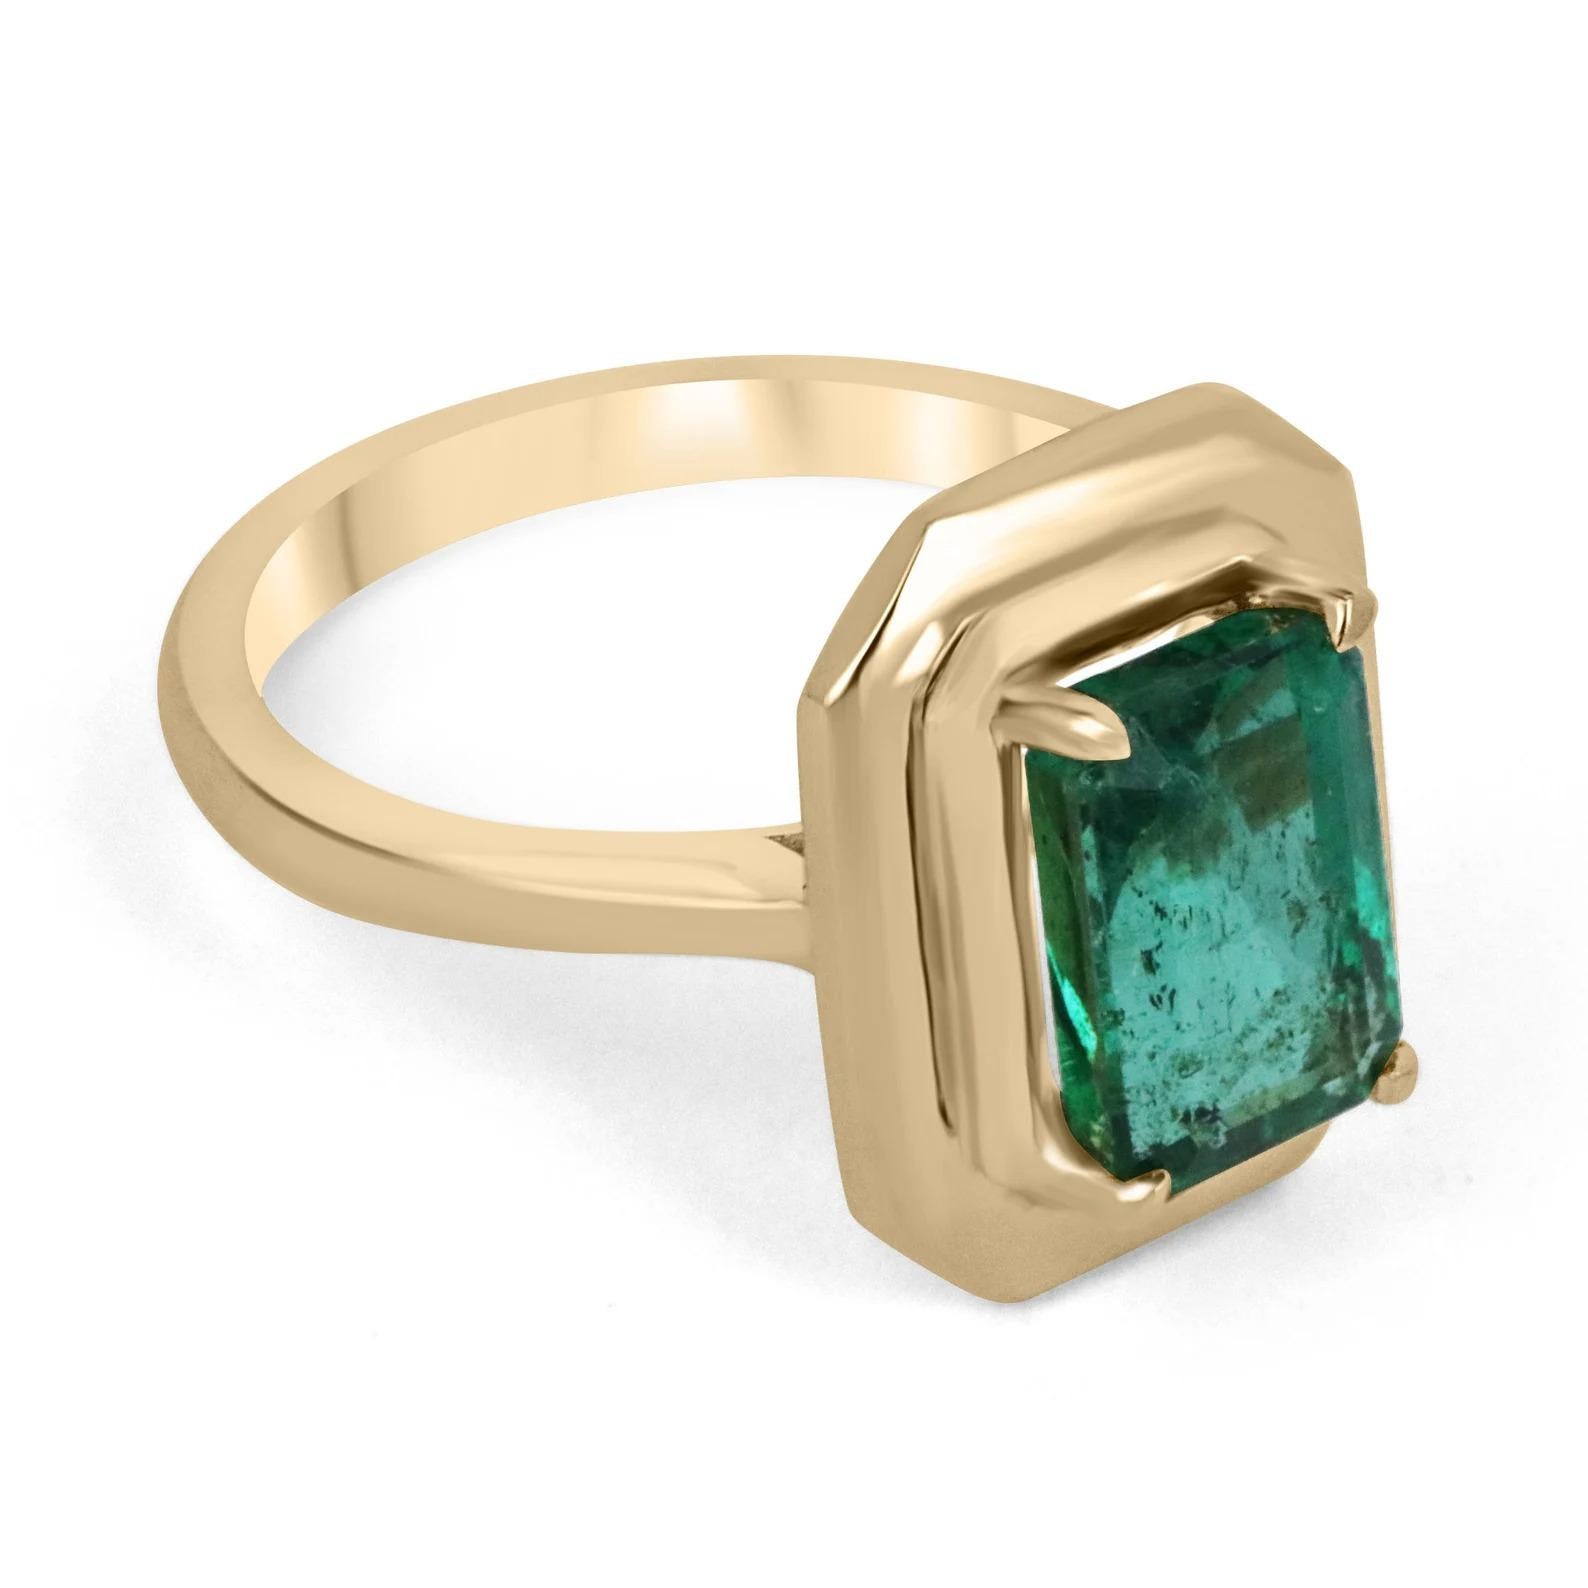 Gezeigt wird ein klassischer Smaragd-Solitär-Verlobungsring oder ein Ring für die rechte Hand. Dieses spektakuläre Stück enthält einen 2,77 Karat schweren, natürlichen Smaragd mit Smaragdschliff aus den Ursprüngen Sambias. Der Mittelstein hat eine